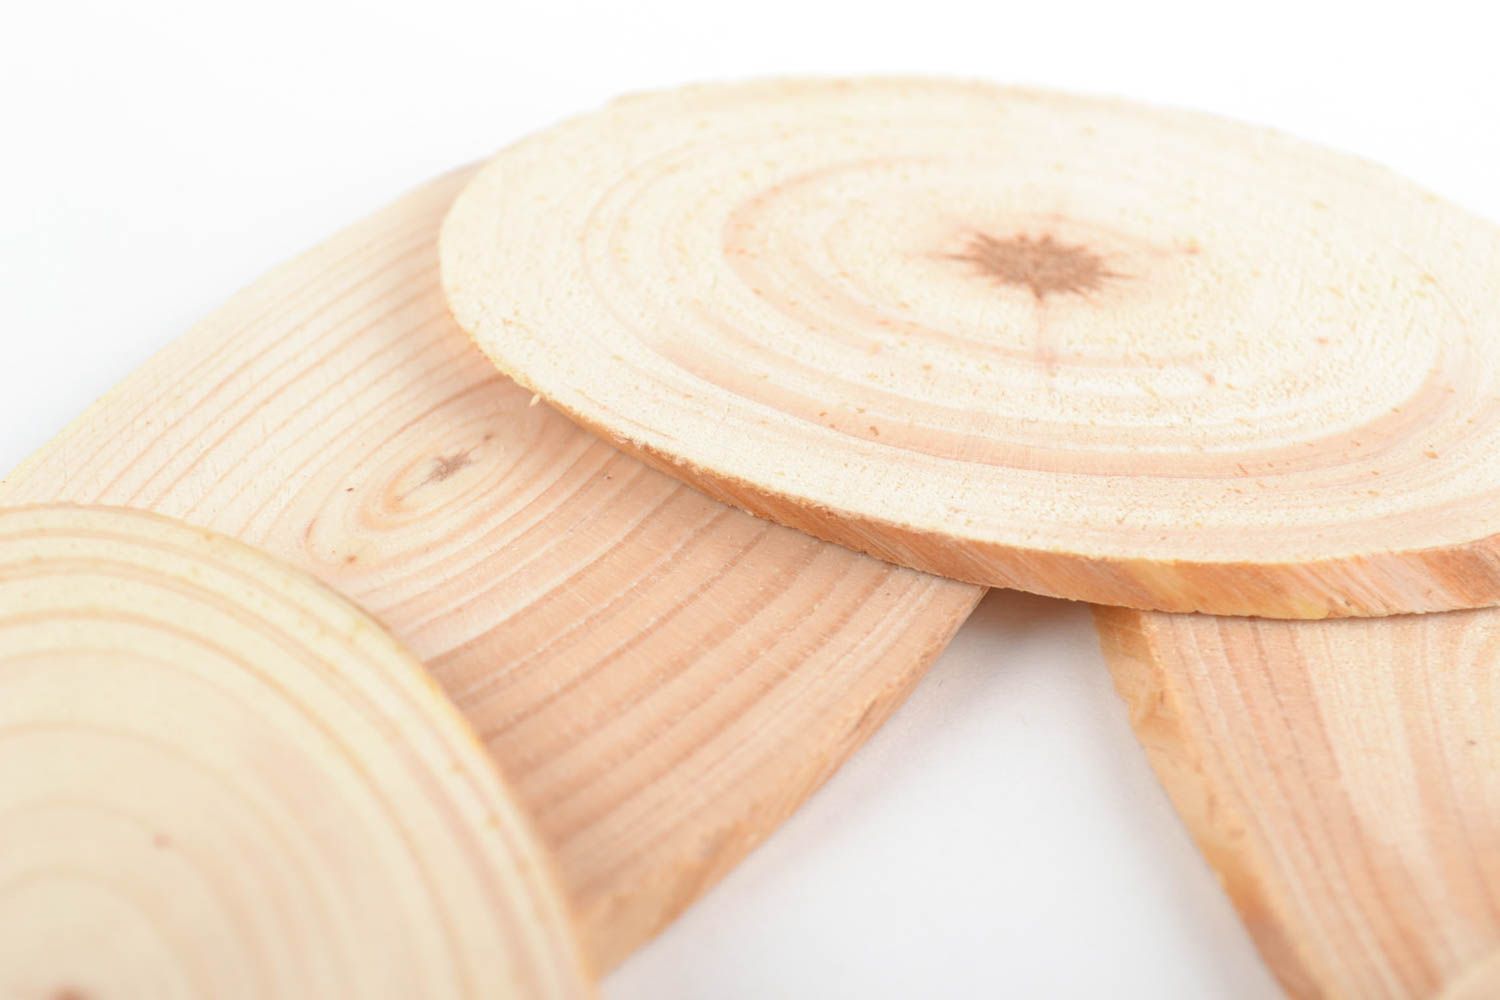 Bequemer schöner handmade Holz Untersetzer für heiße Töpfe Küchen Dekor foto 4